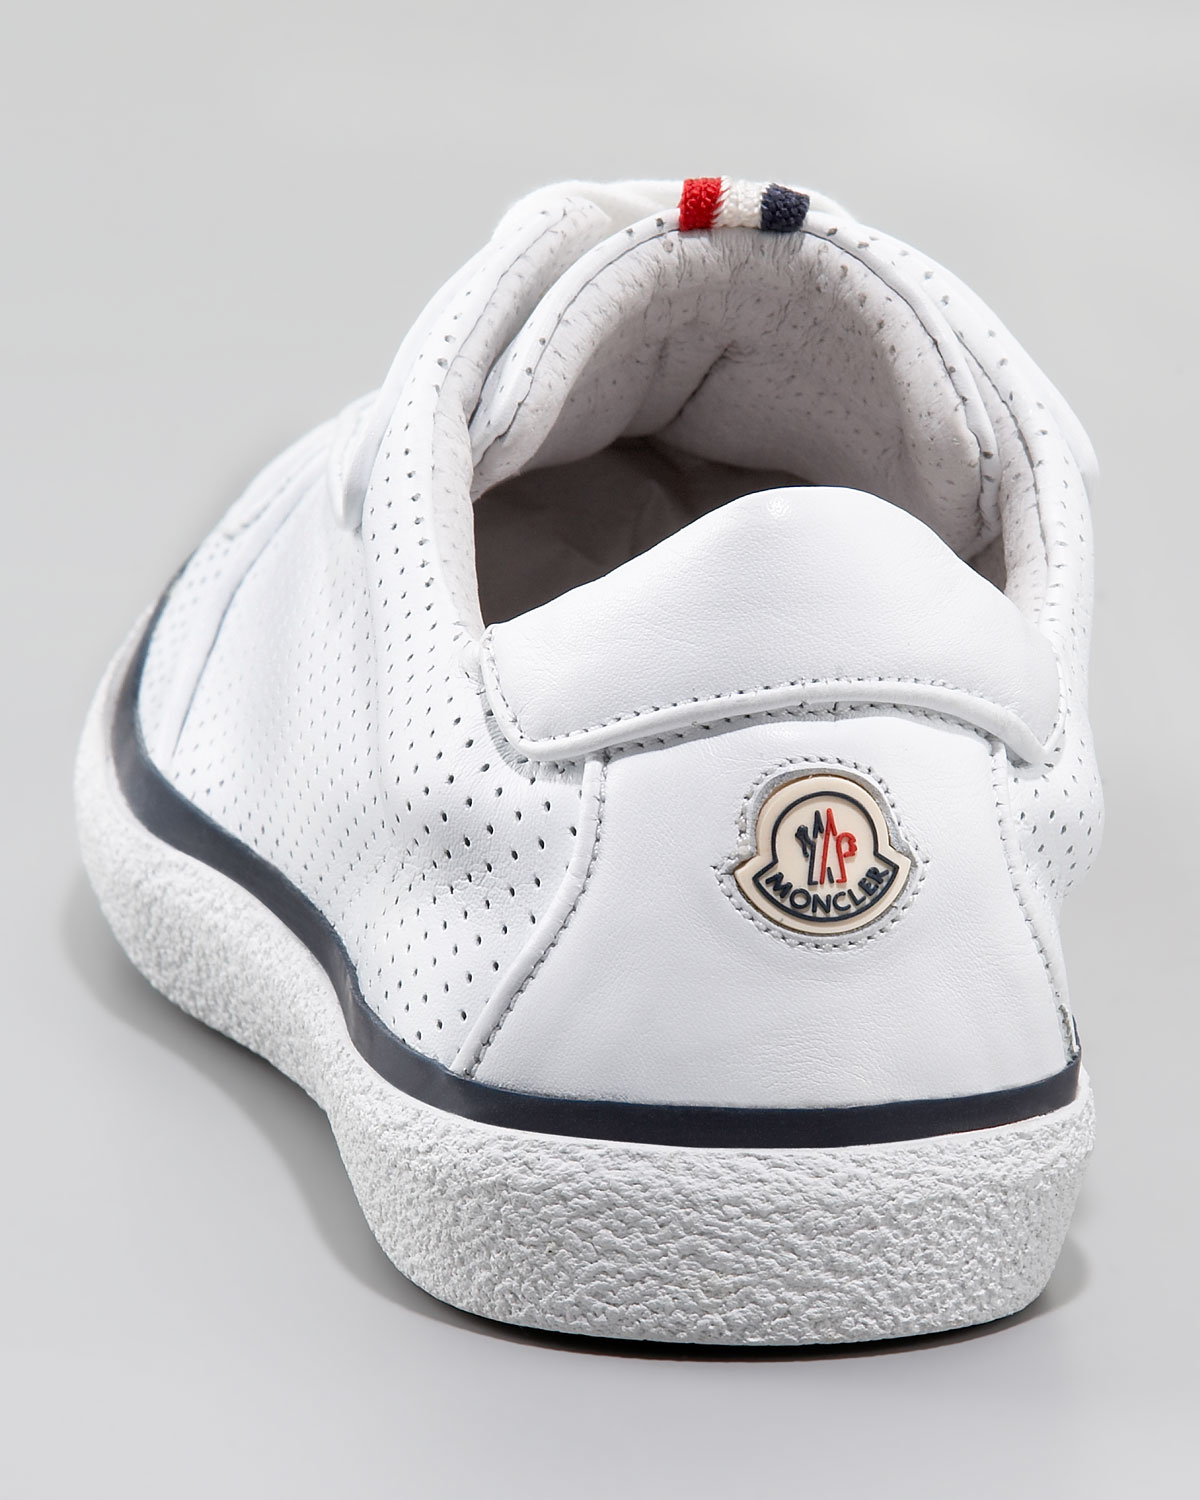 Moncler Orleans Sneaker in White for Men - Lyst1200 x 1500